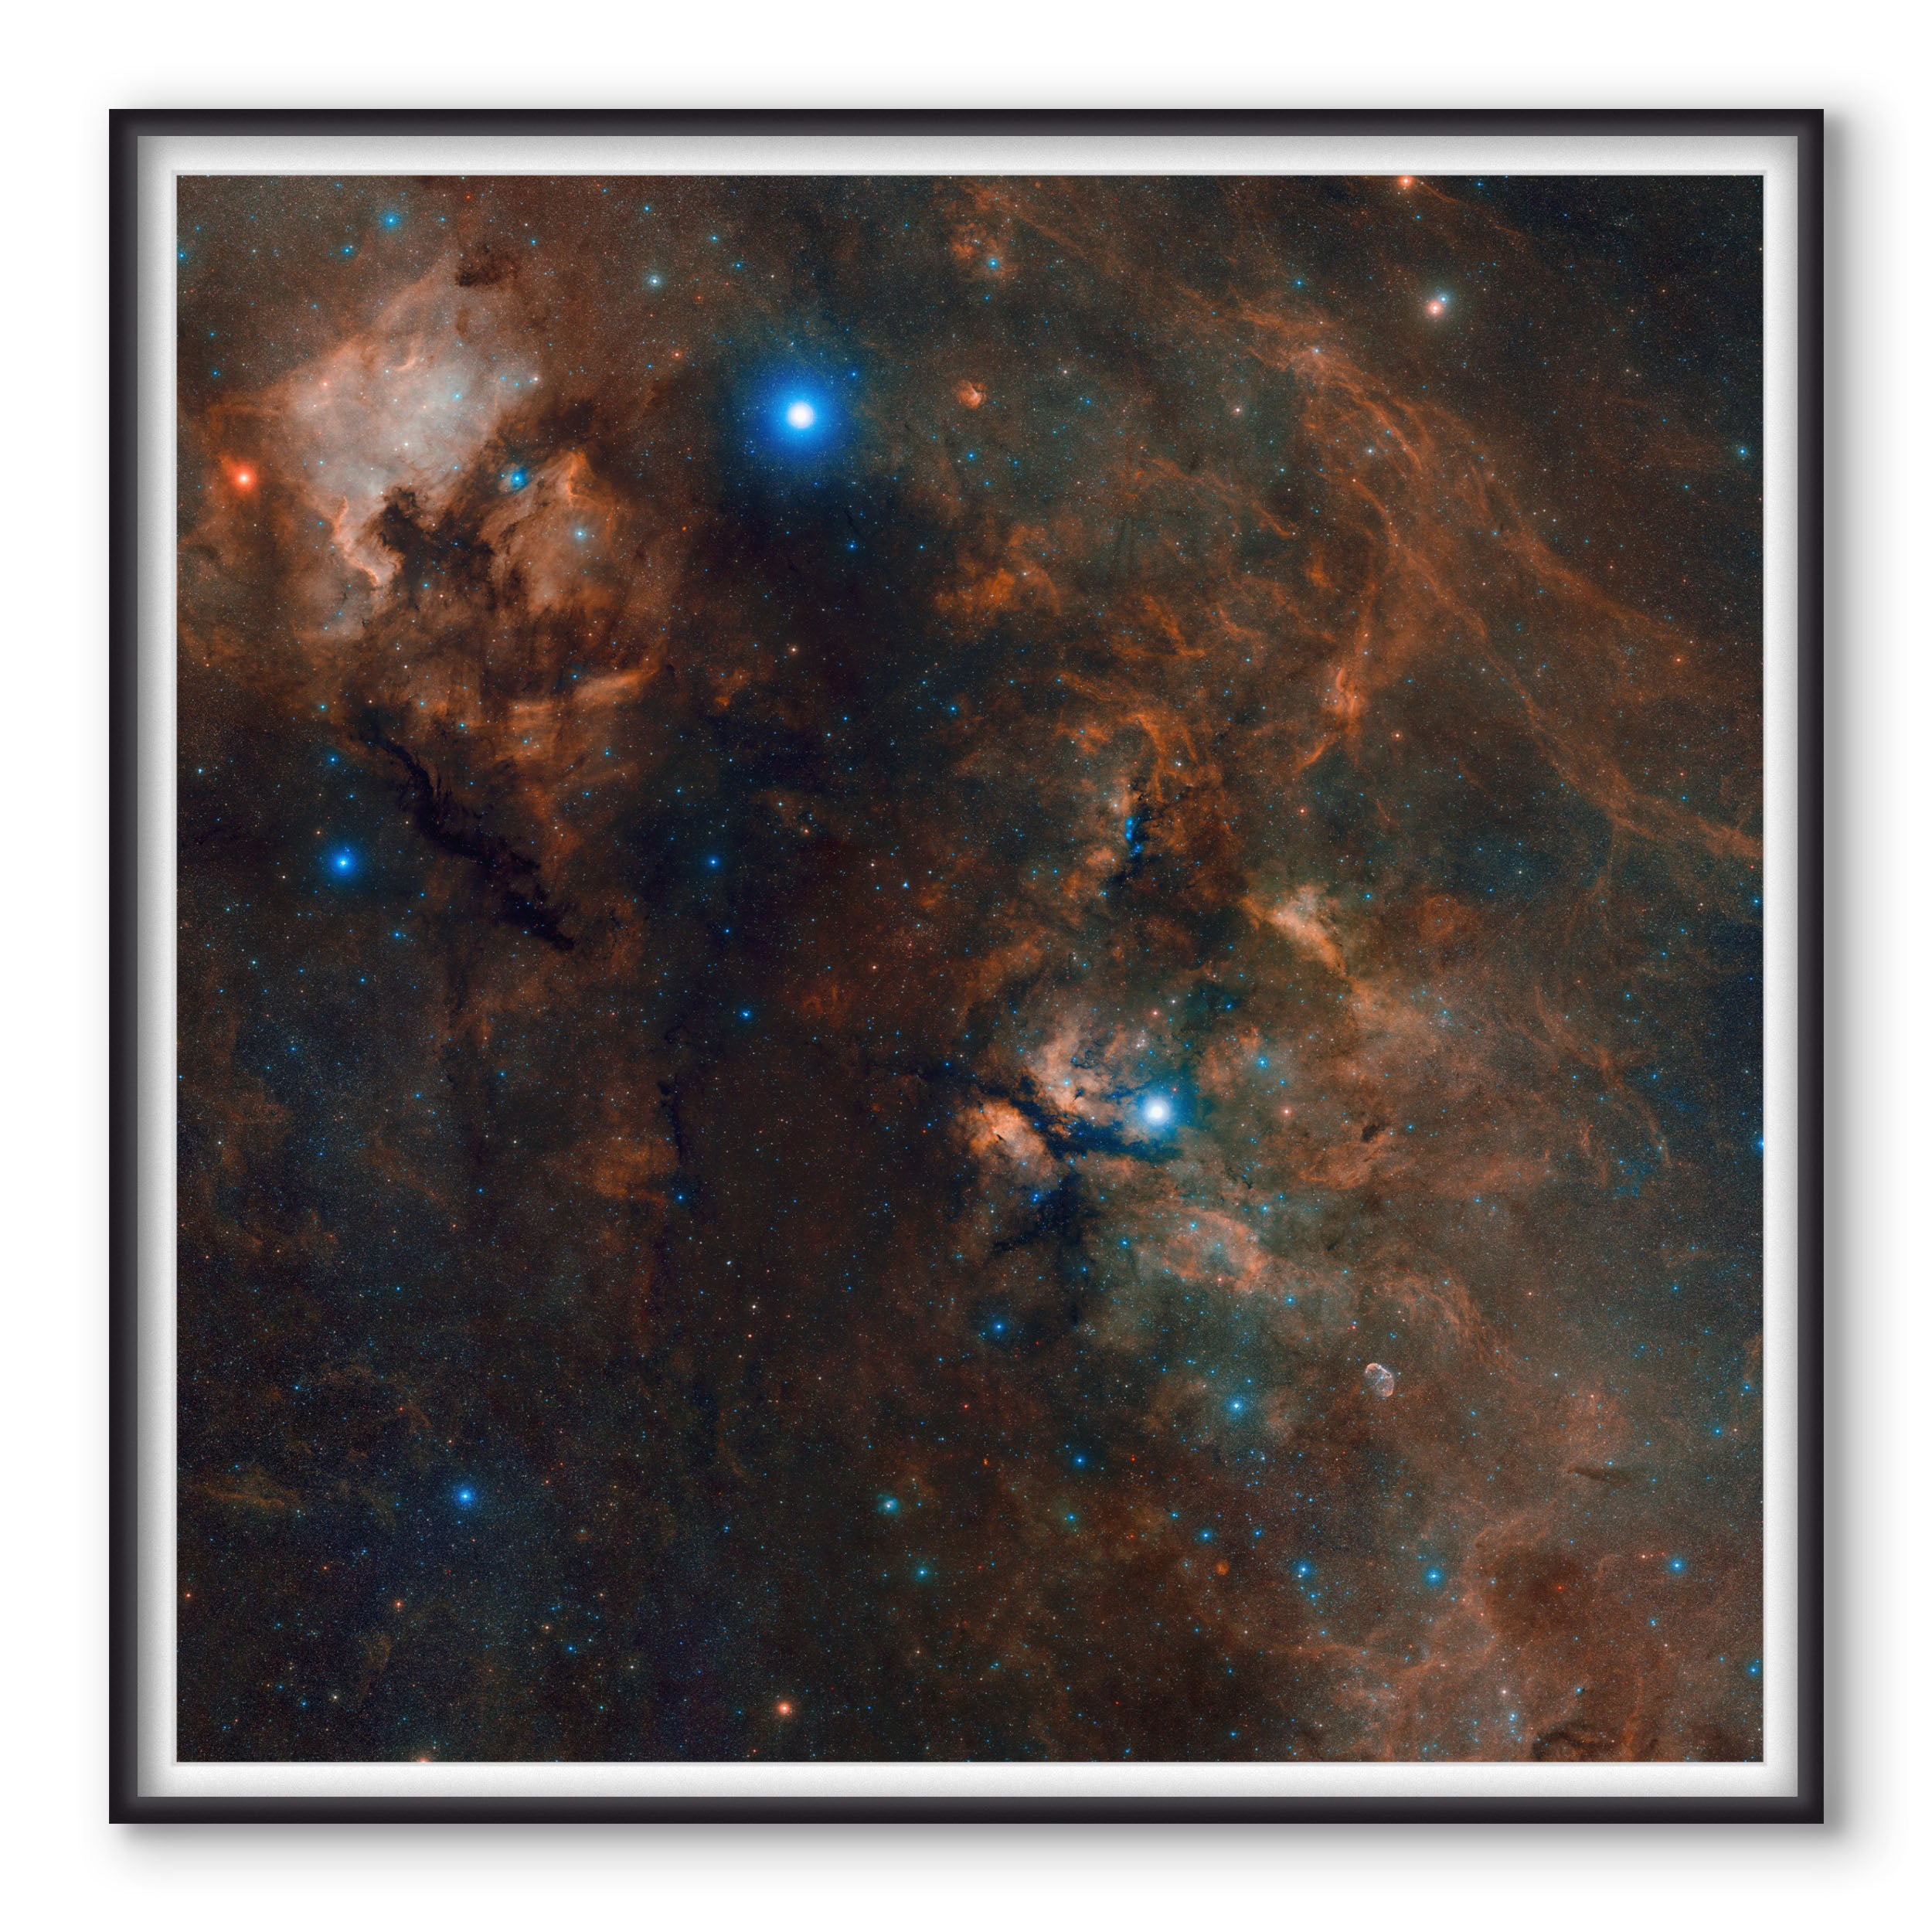 Cygnus full of stars - 2.5 Gigapixels